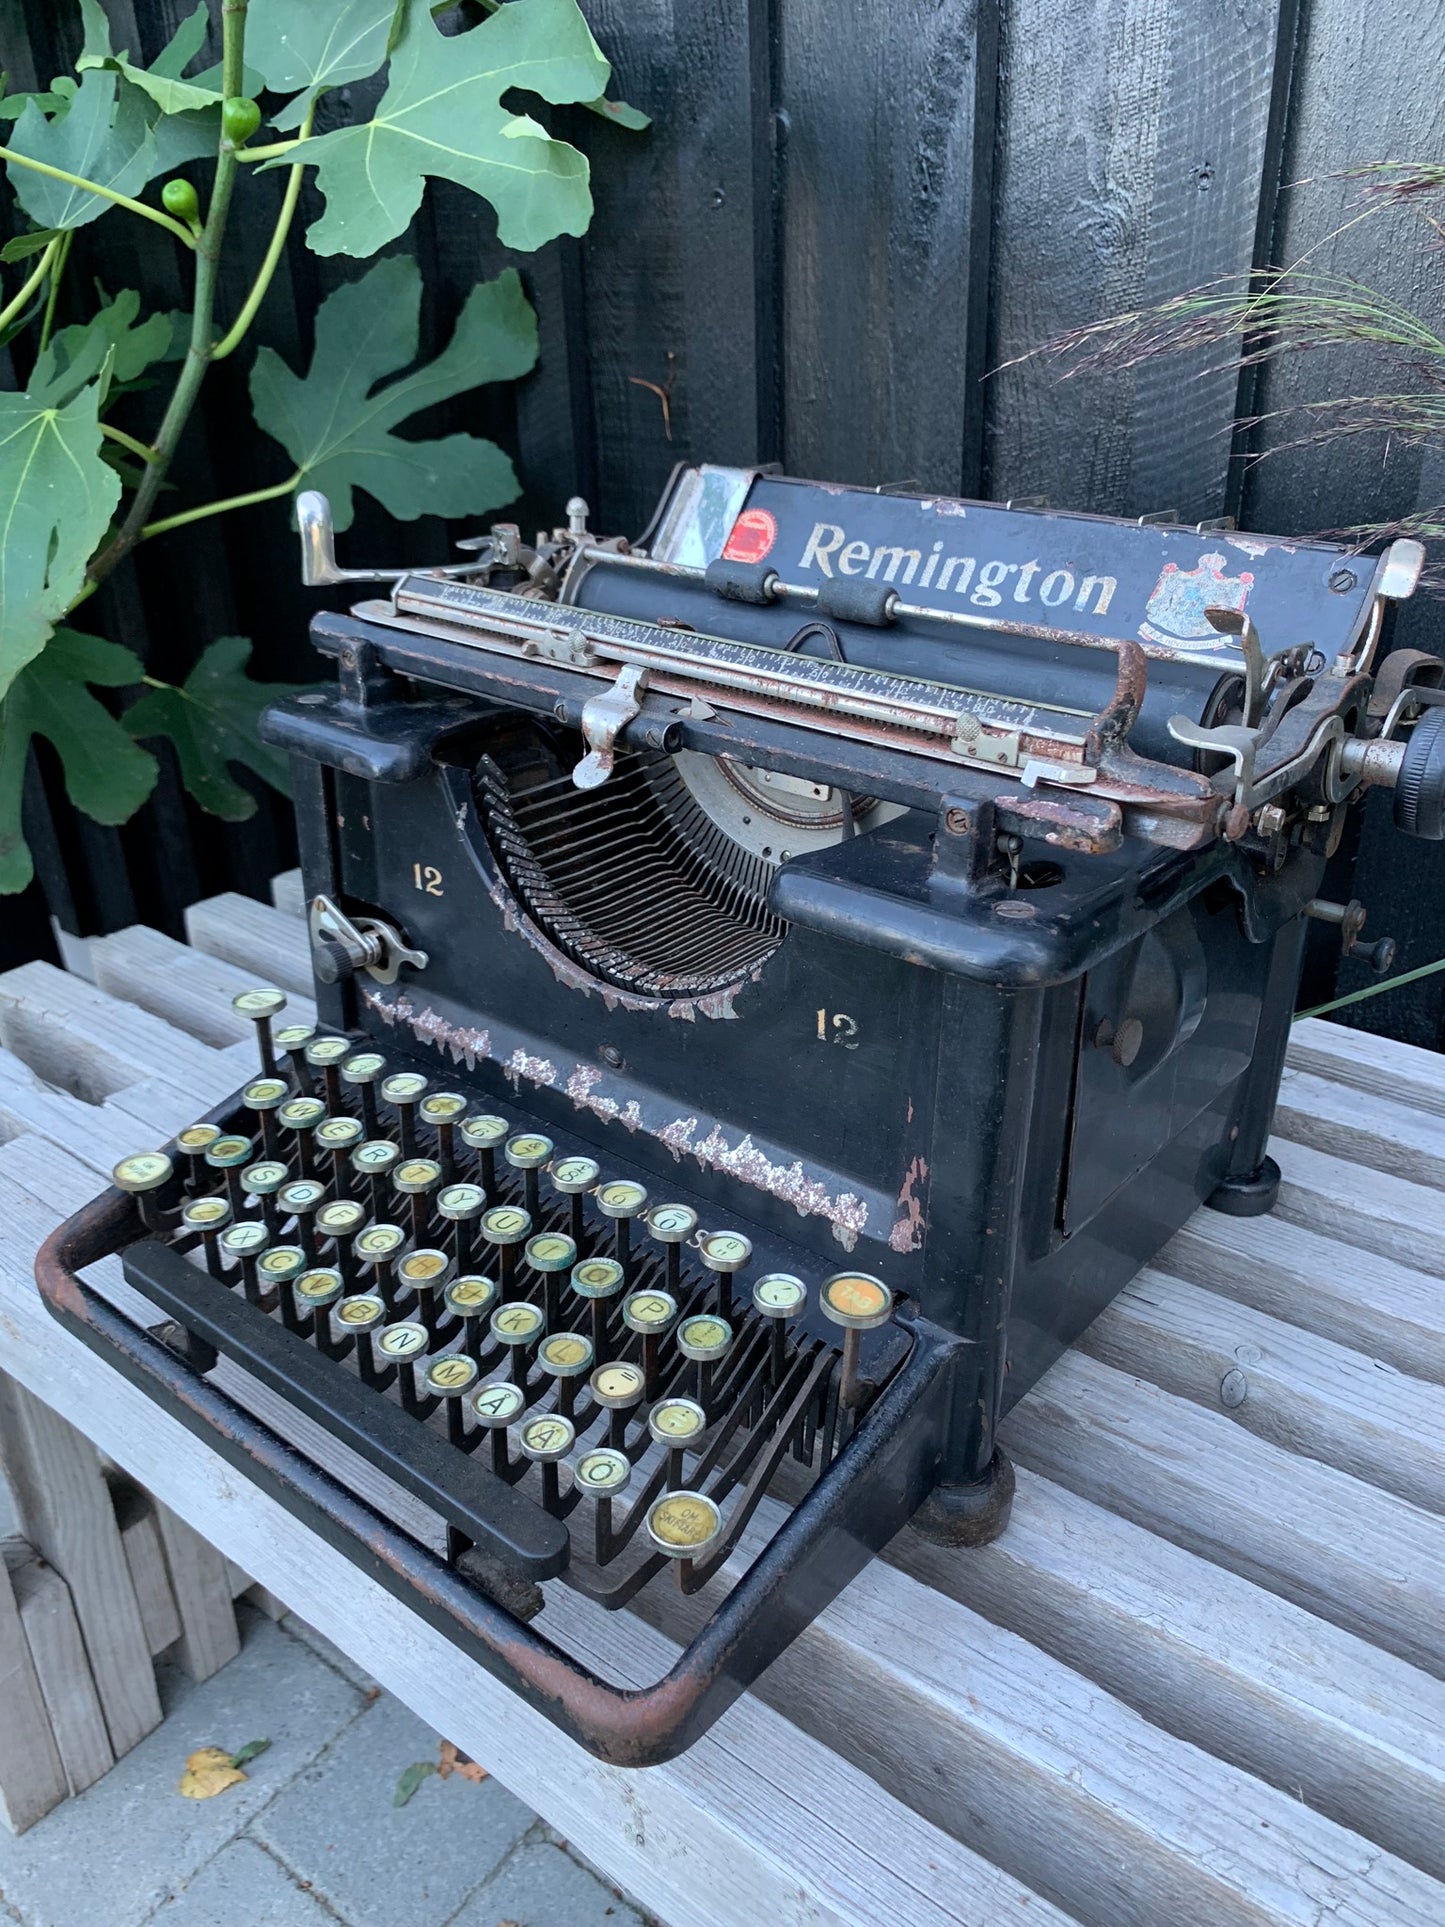 Remington Schreibmaschine mit schöner Patina